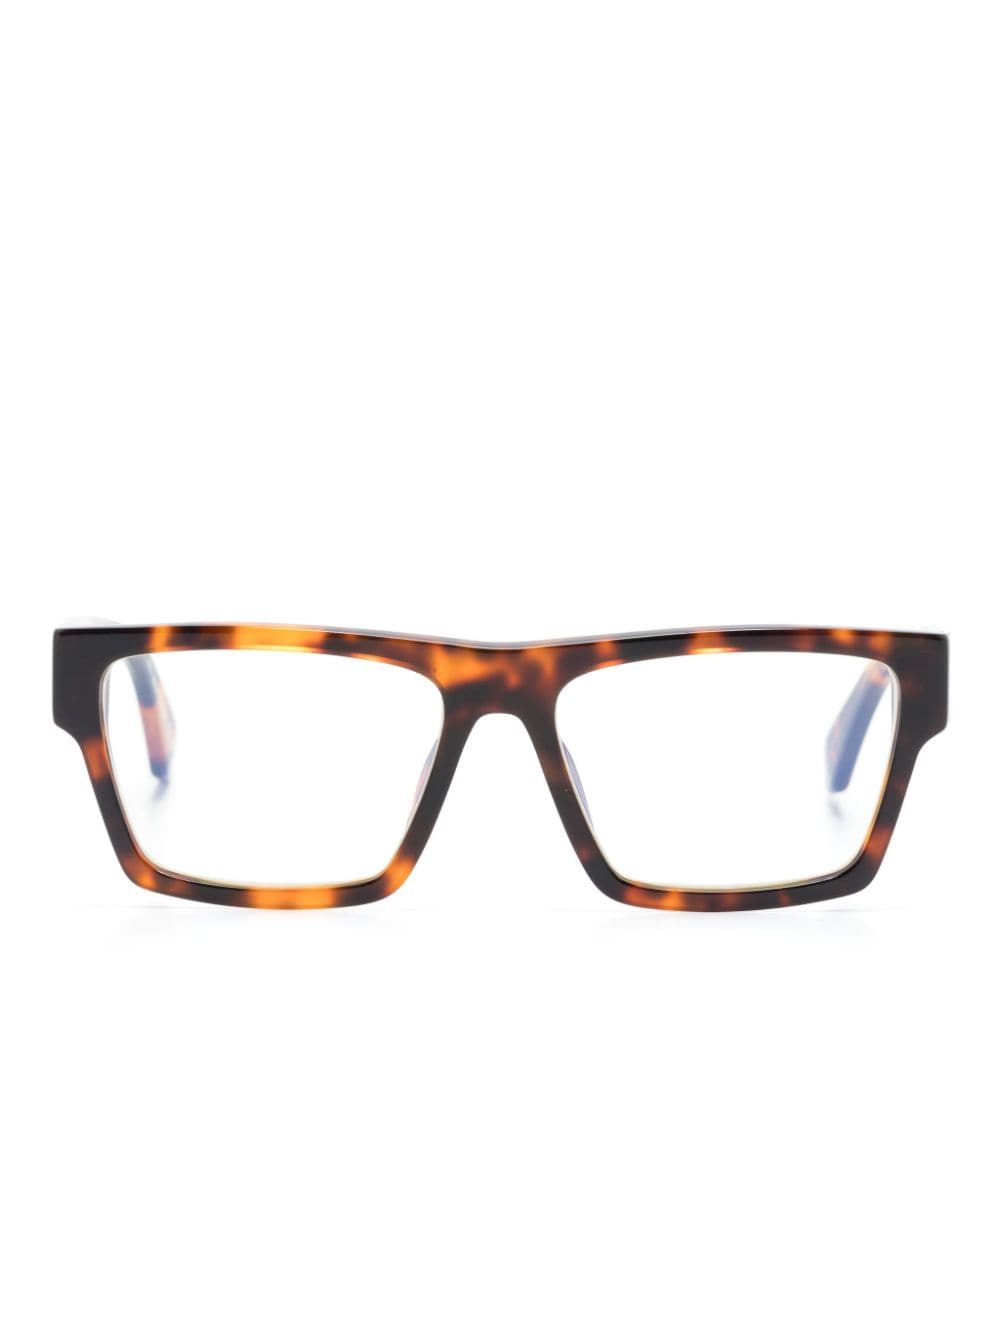 Off-White Eckige Optical Style 46 Brille - Braun von Off-White